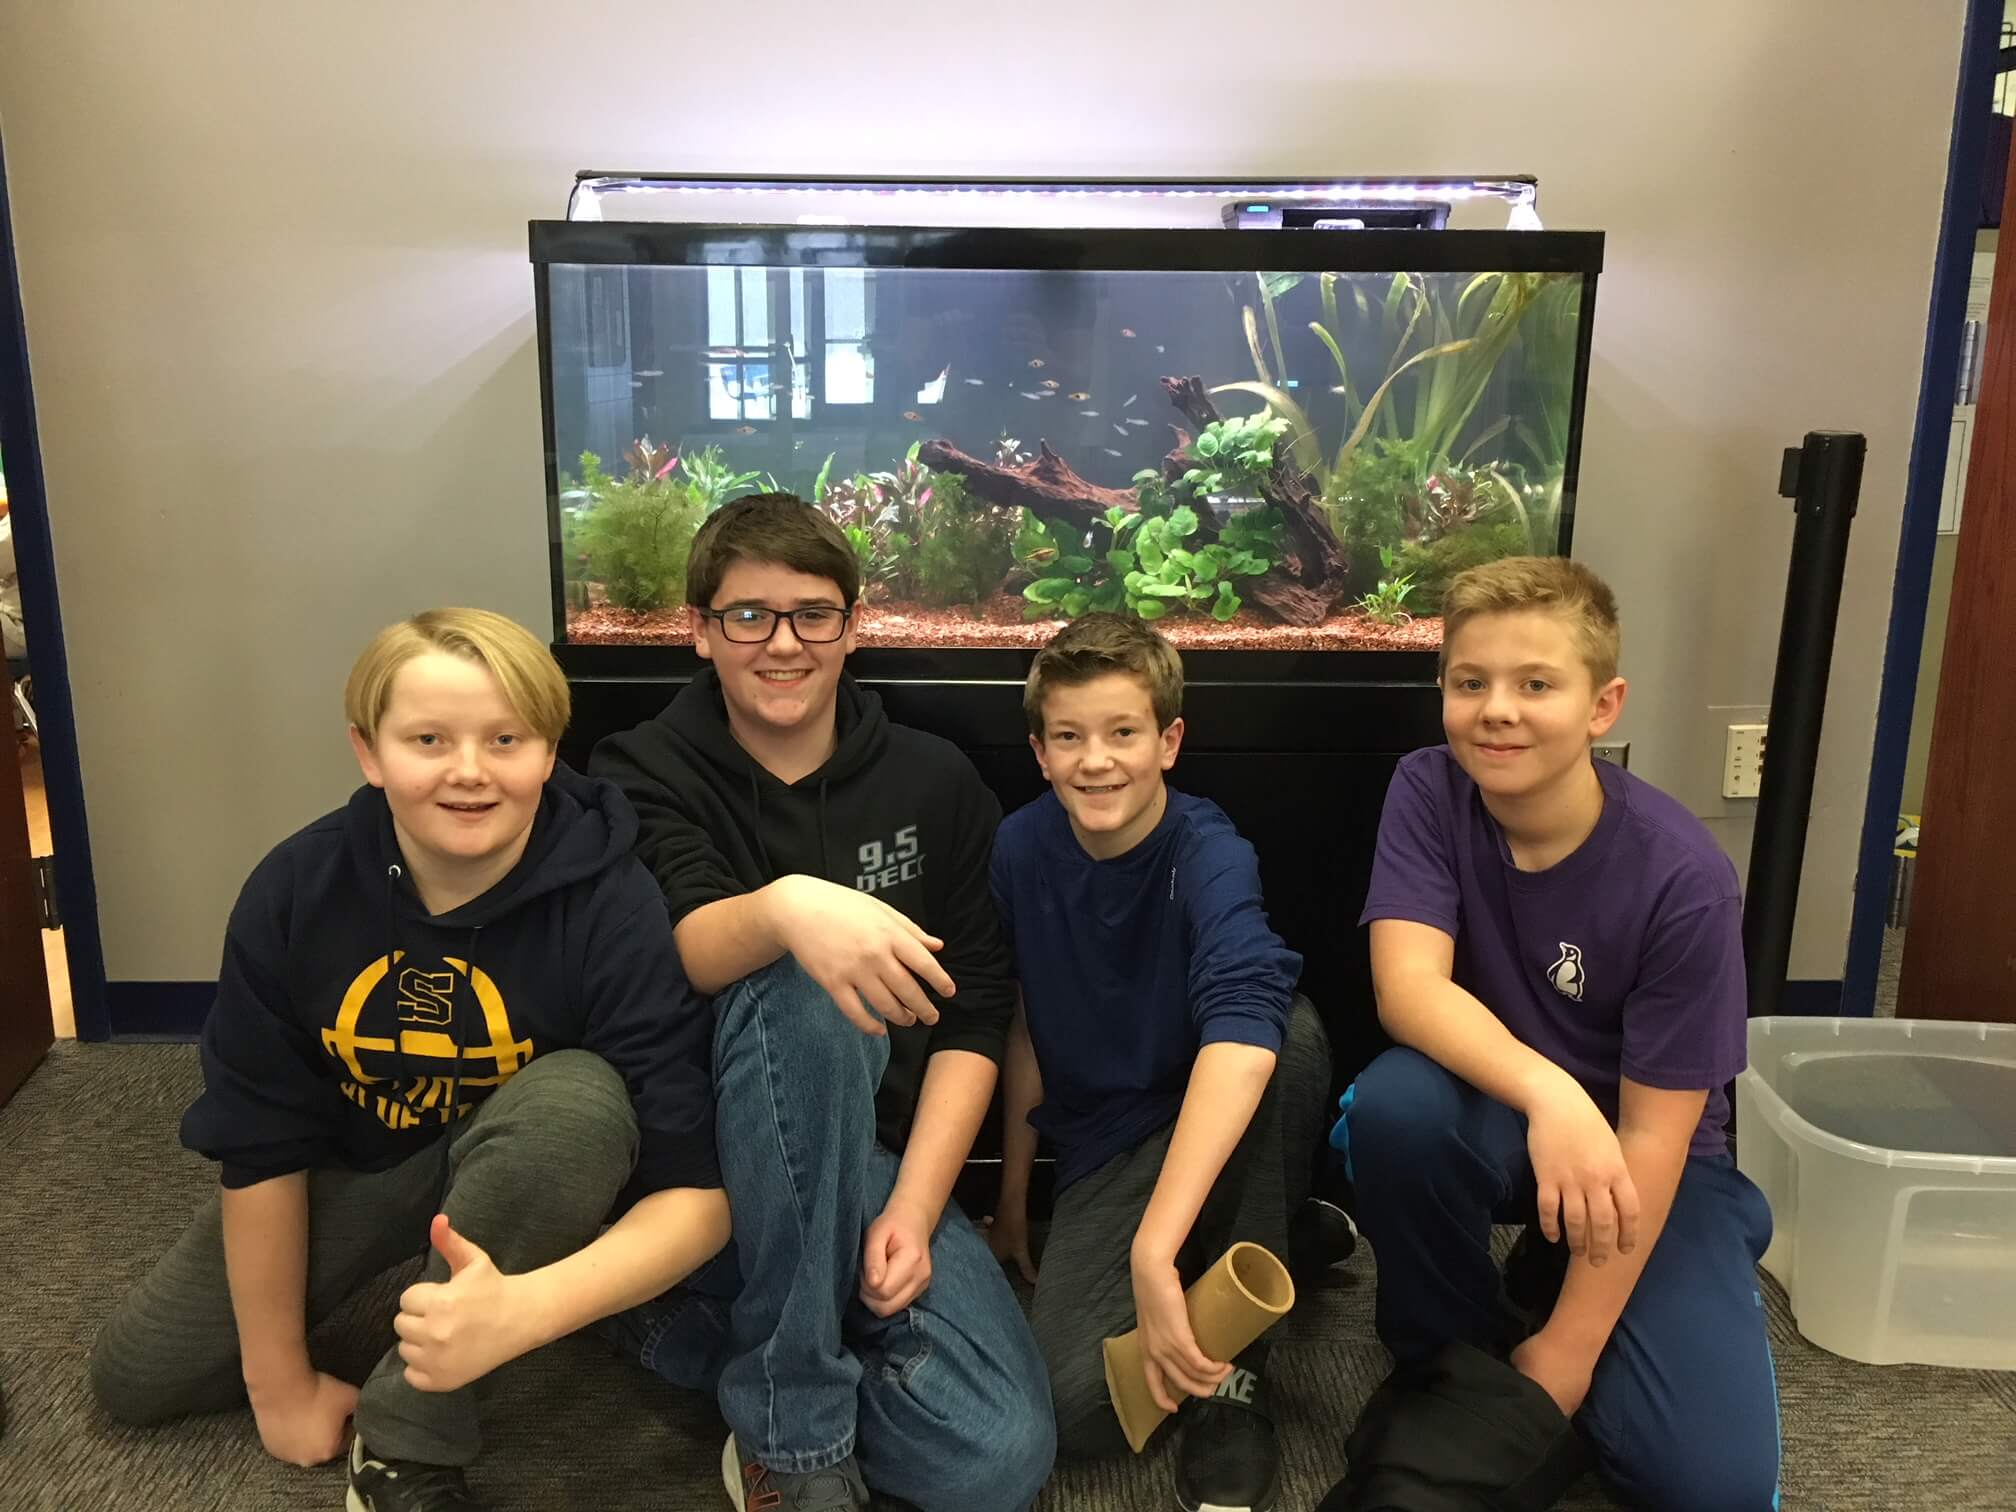 Students posing in front of aquarium